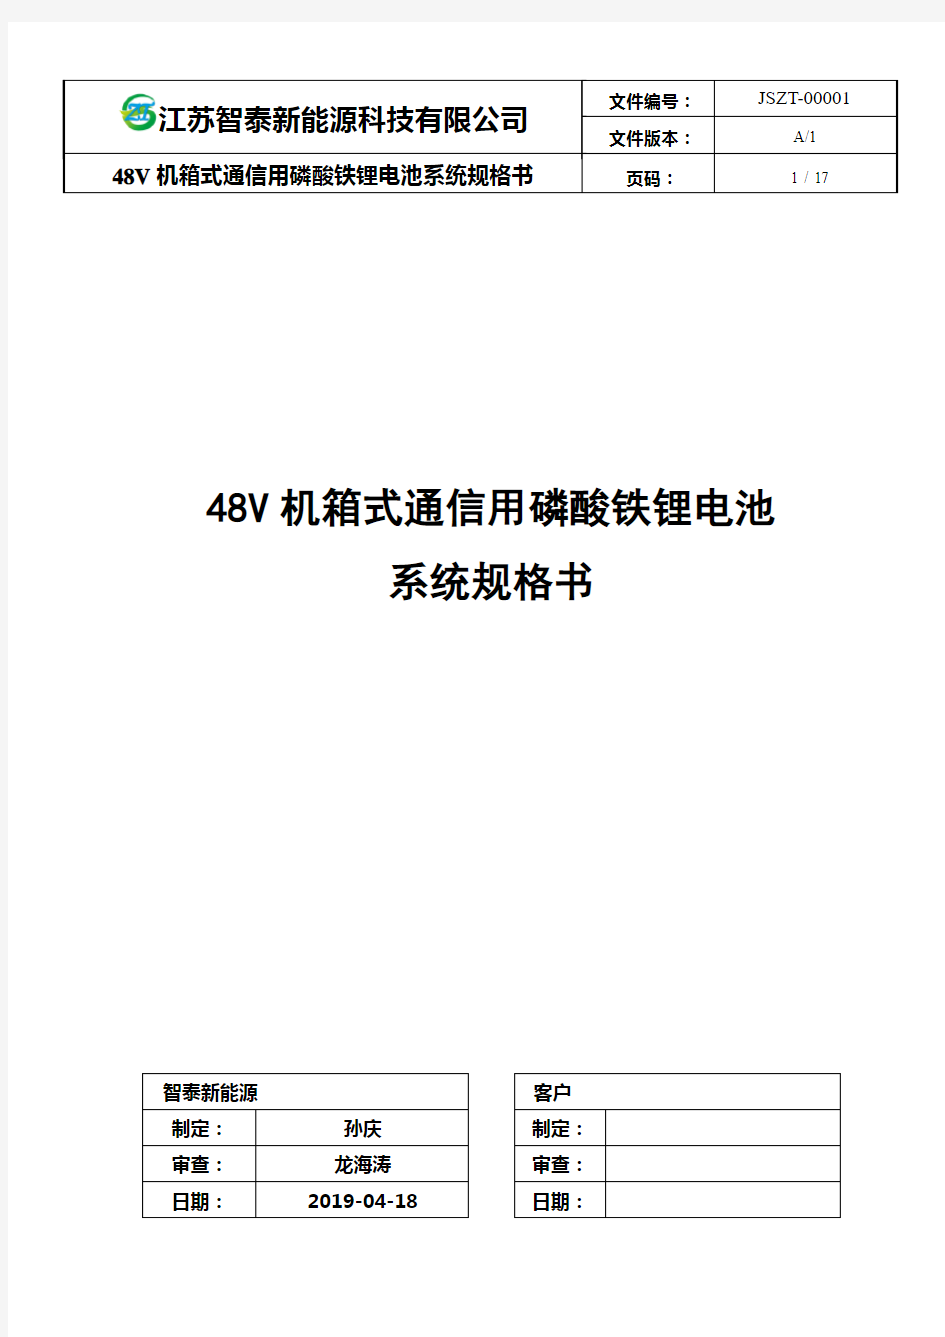 ZT-48V系列机箱式通信用磷酸铁锂电池系统技术规格书A1-4P(1)(1)